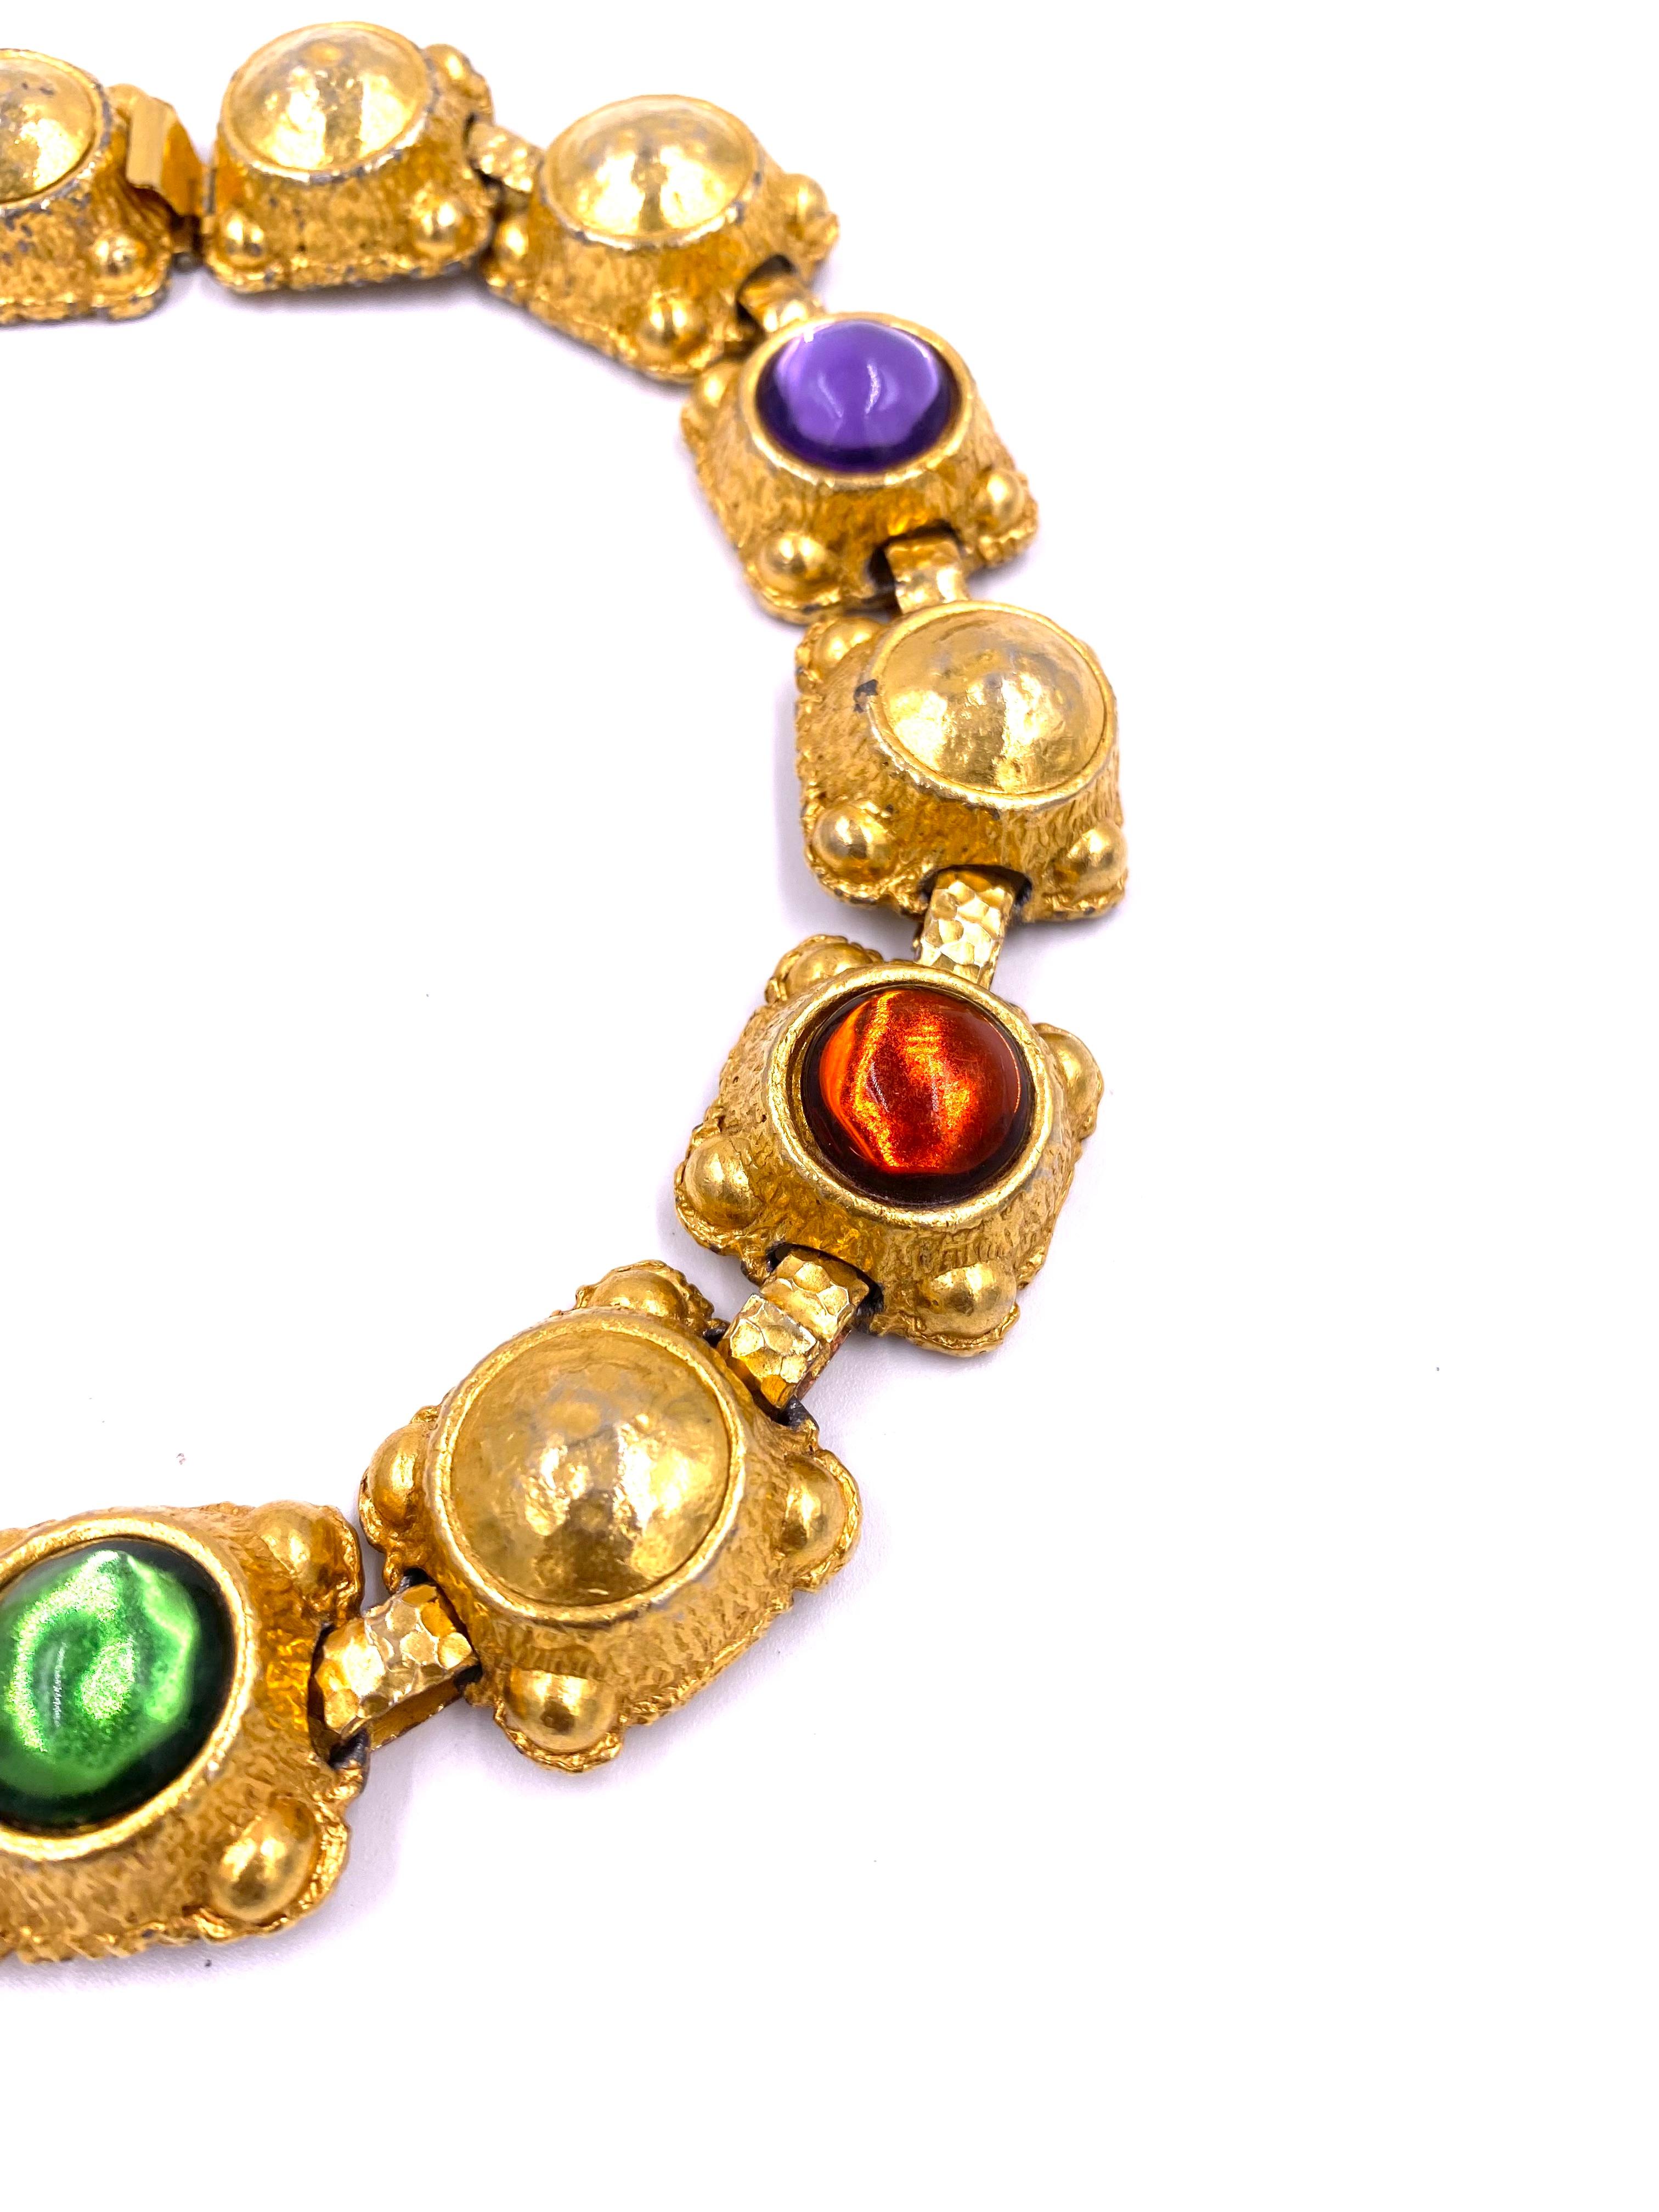 Retro Vintage Oscar de La Renta Gold Necklace w/ Cabachon Stones For Sale